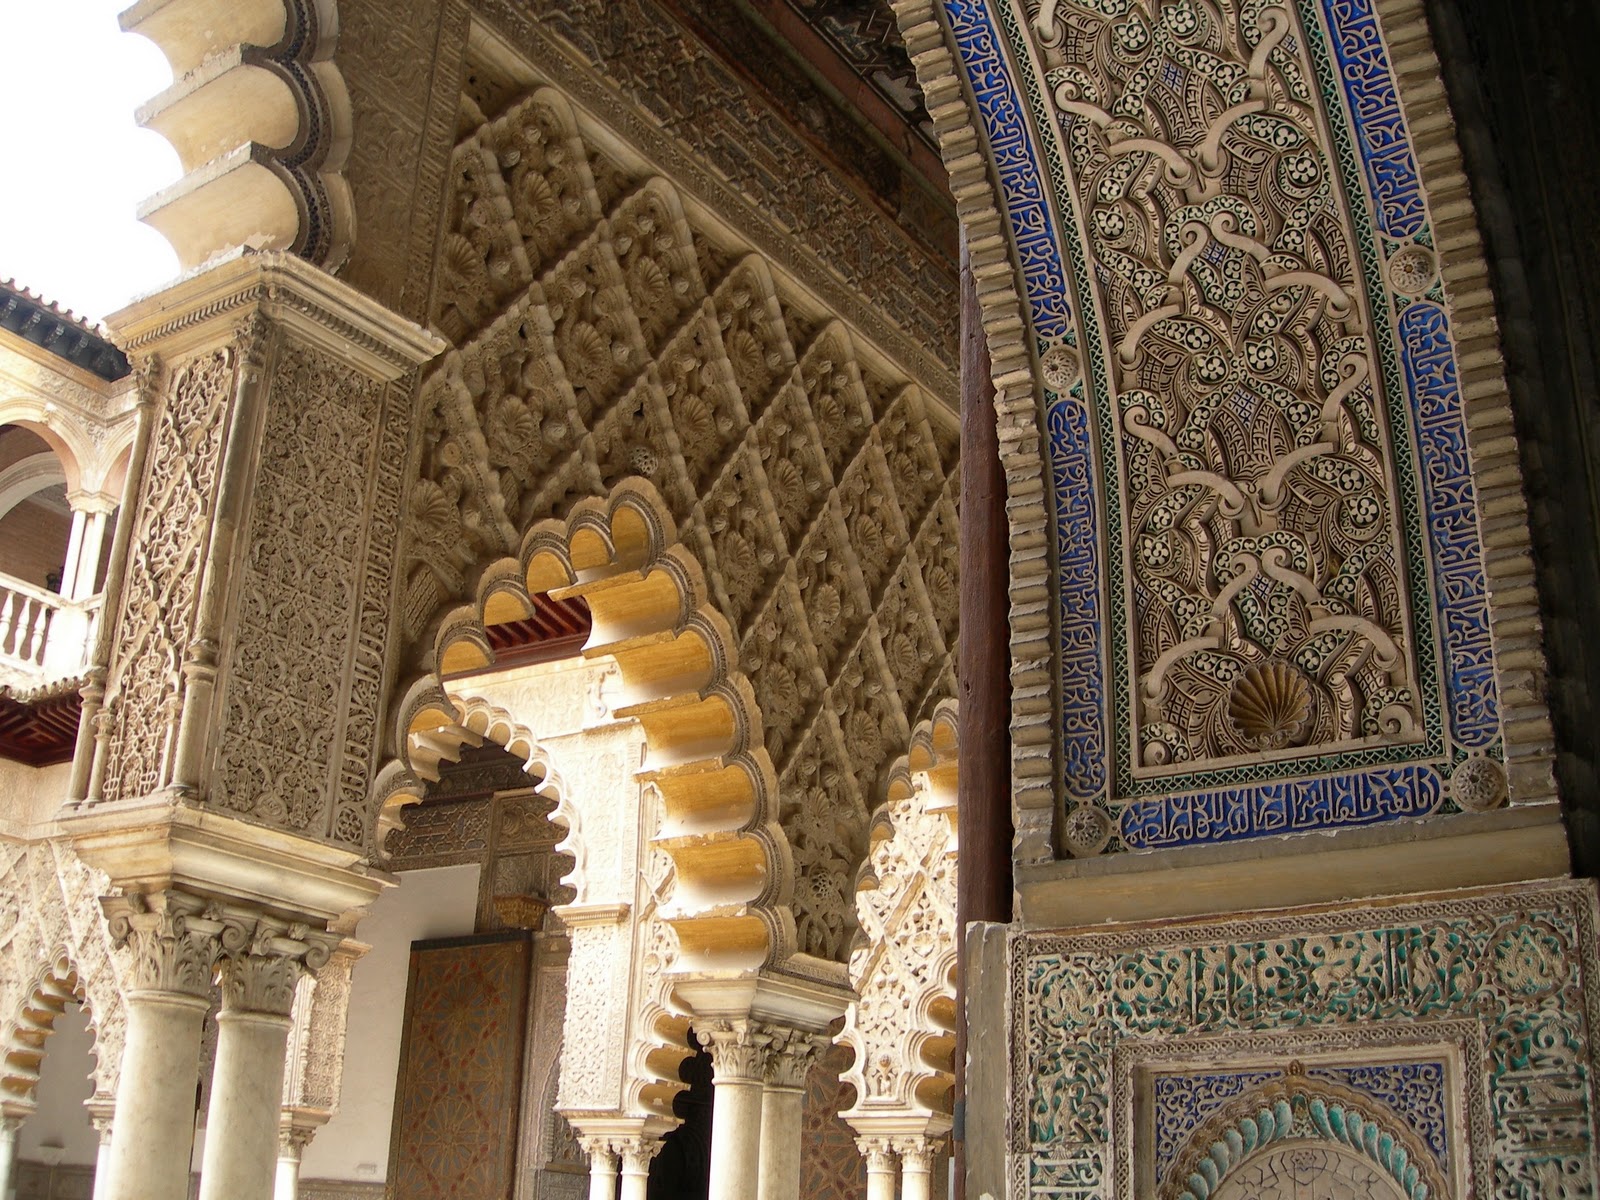 papier peint arabe,lieux saints,architecture,cambre,colonne,bâtiment